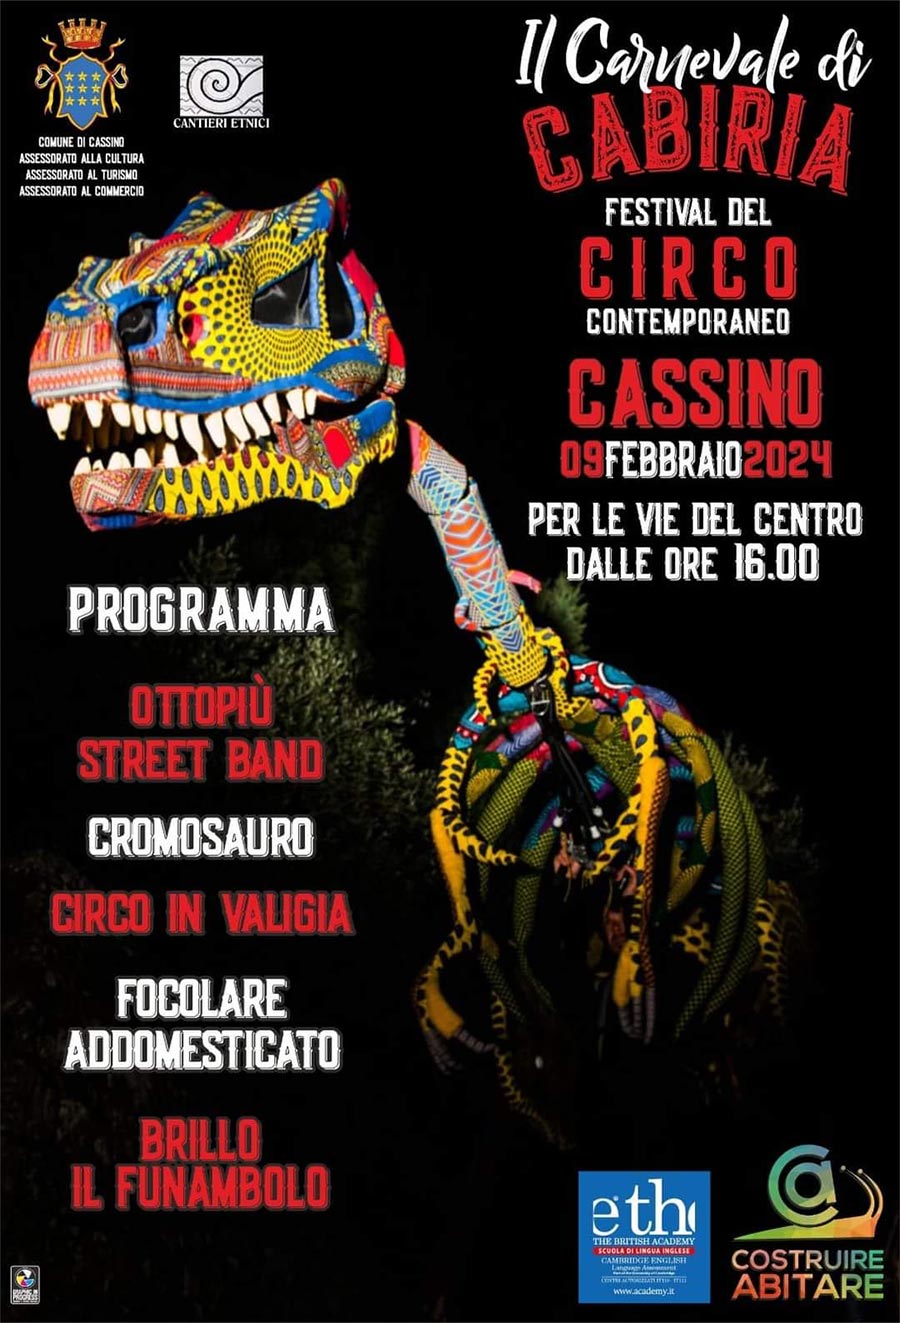 Il Carnevale di Cabiria 2024 Cassino